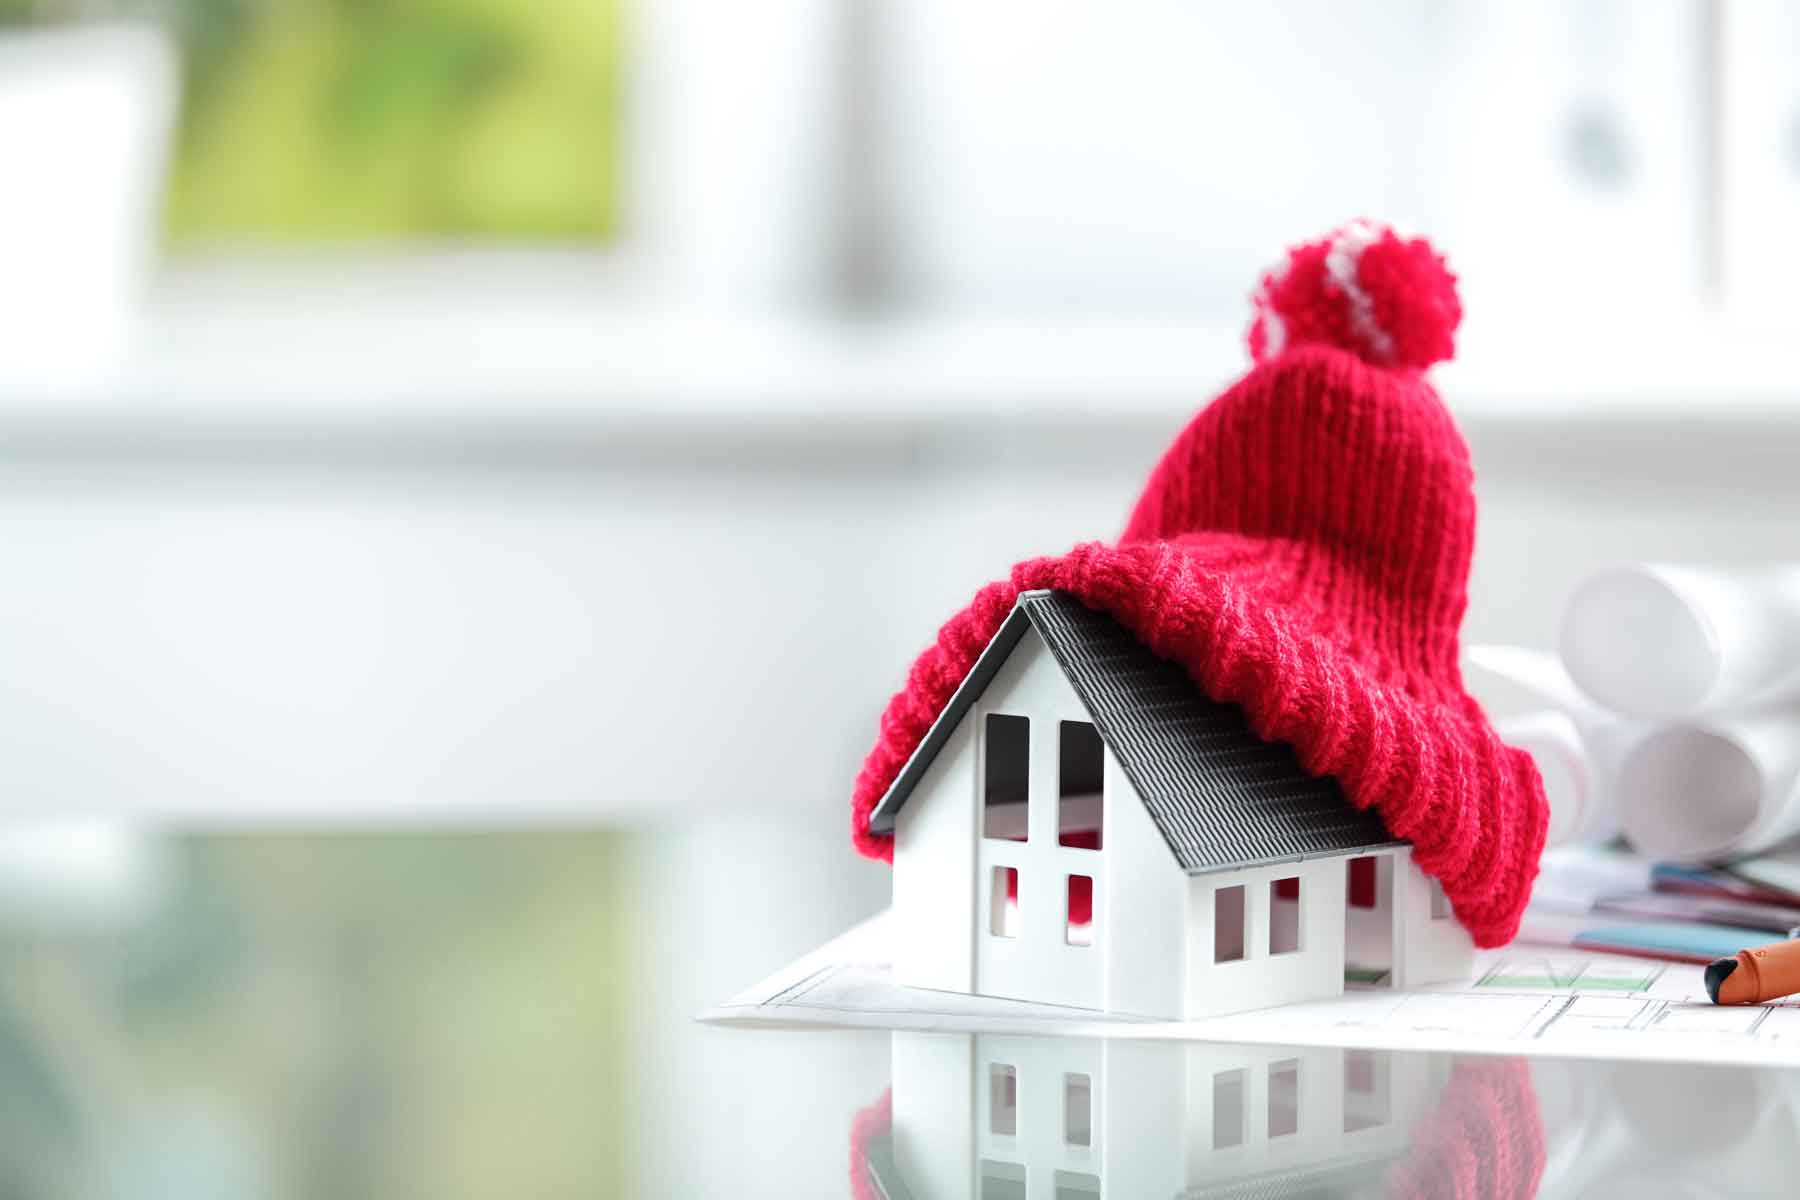 Maquette de maison sur un plan d'architecte avec un bonnet rouge au niveau de la toiture